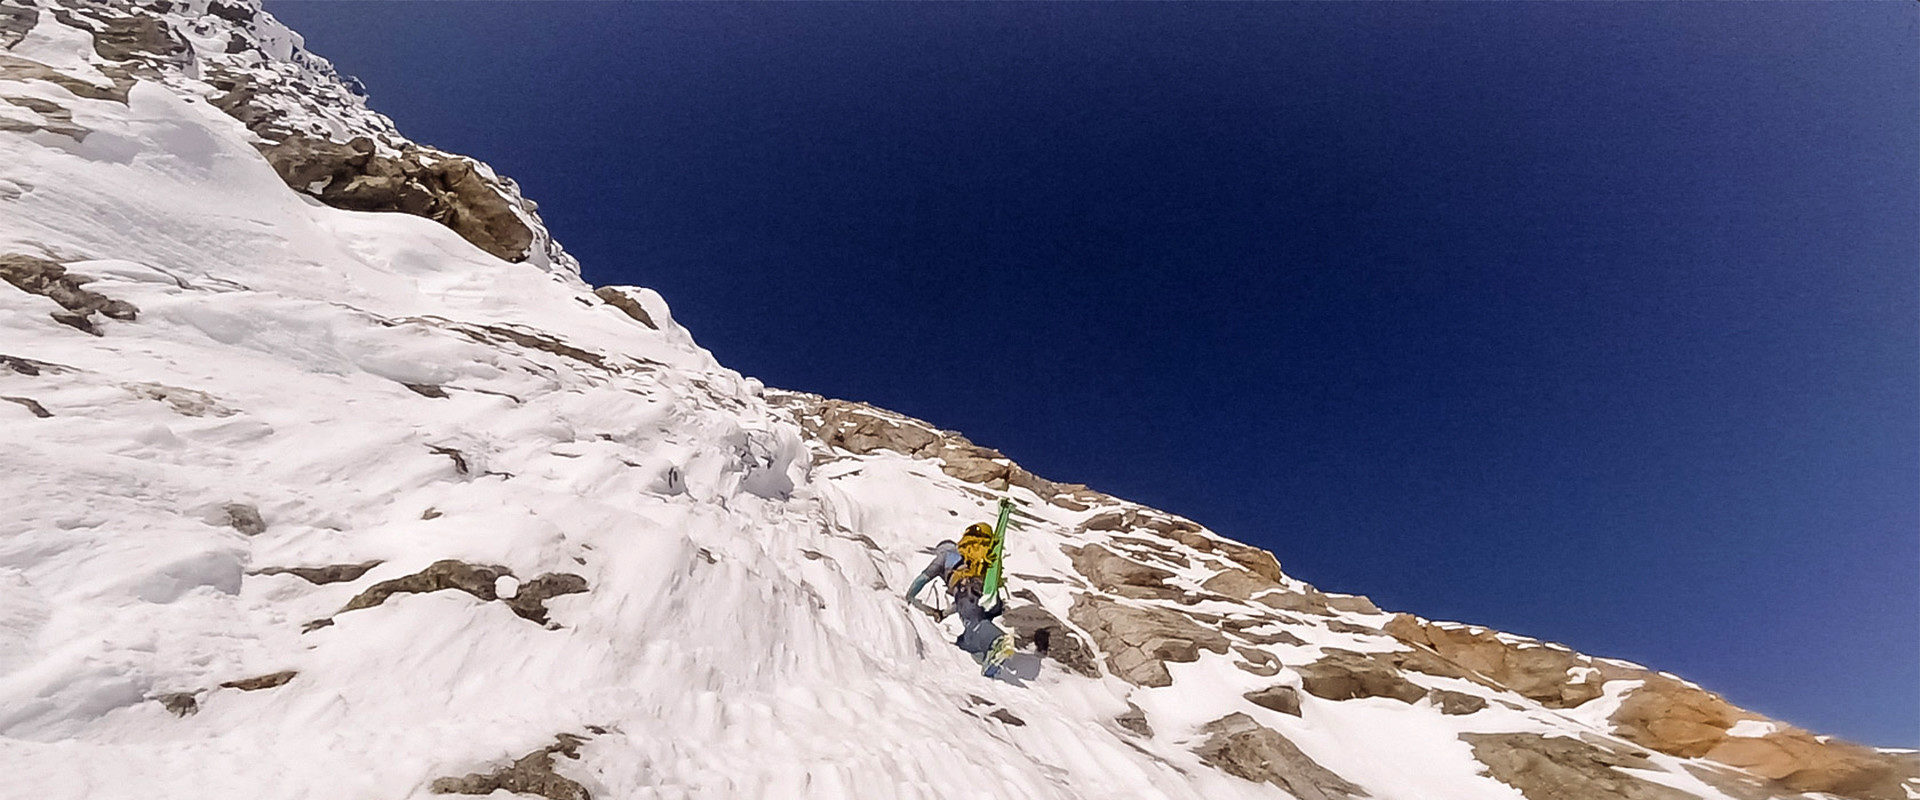 Björn Heregger bei einer anspruchsvollen Steilwandbefahrung in felsdurchsetzter Schneeflanke im Aufstieg